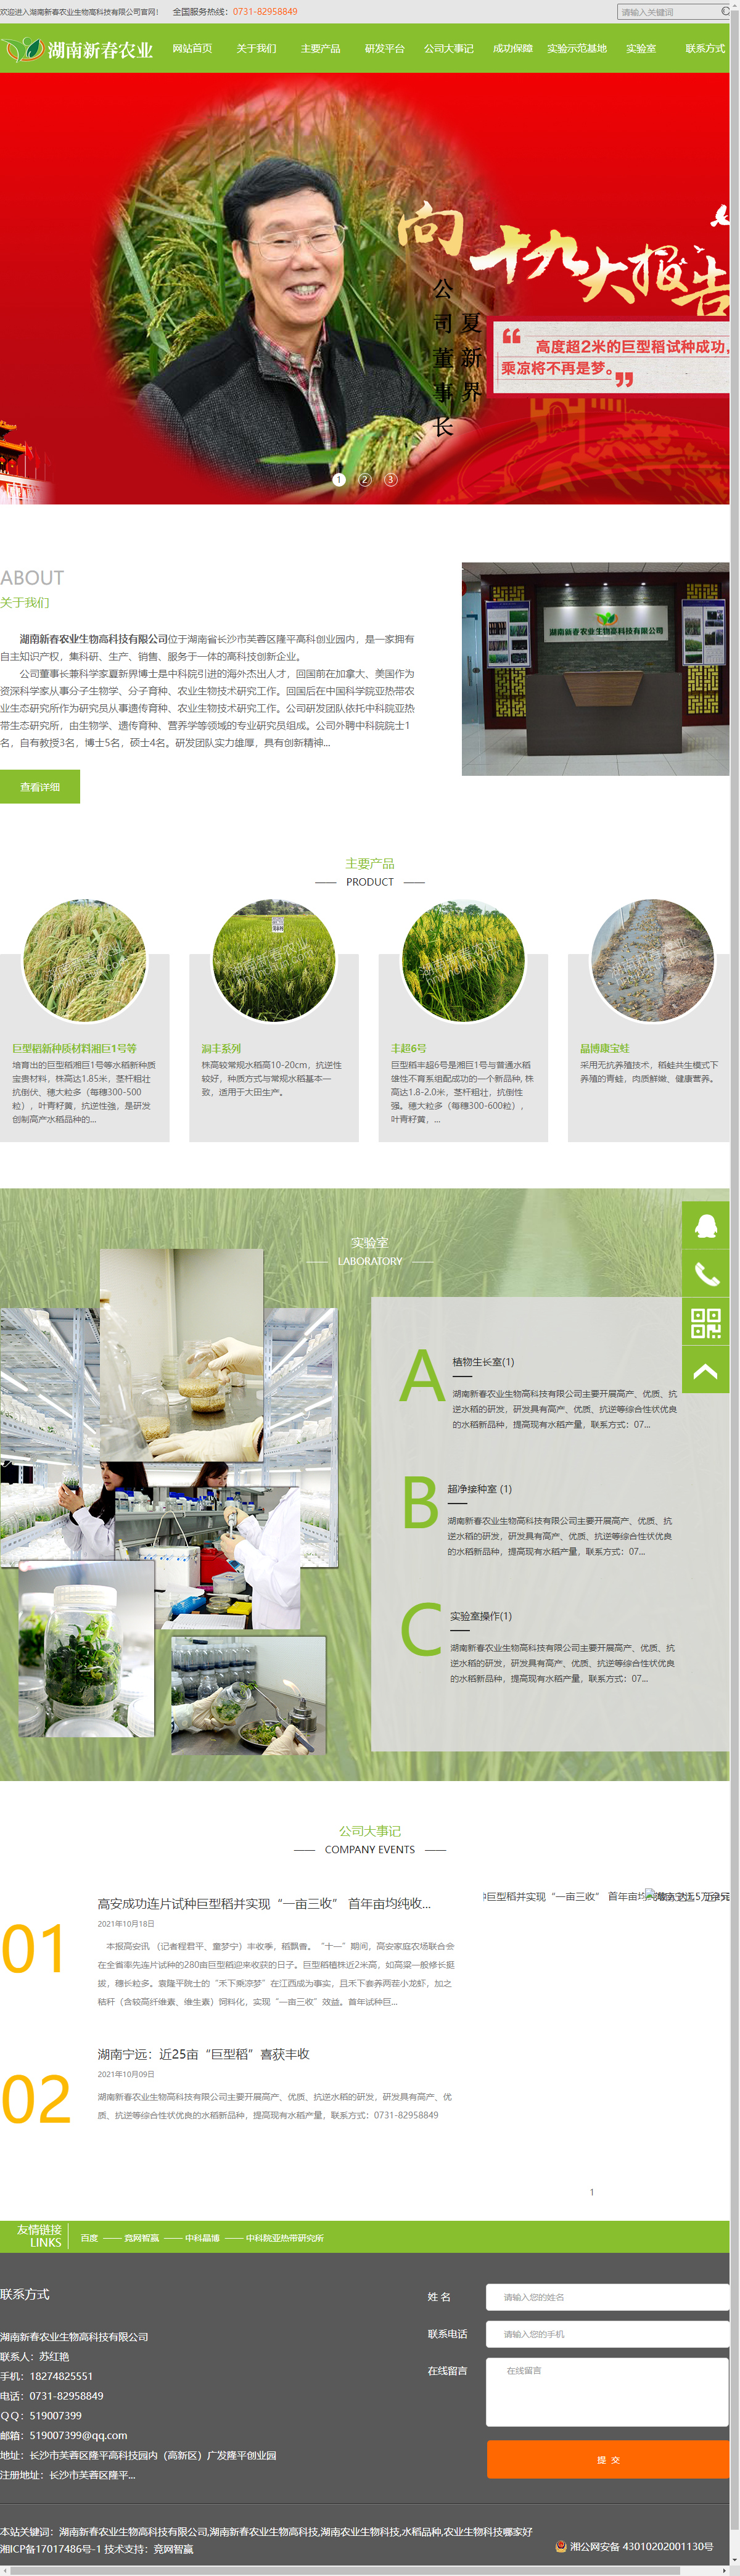 湖南新春农业生物高科技有限公司网站案例